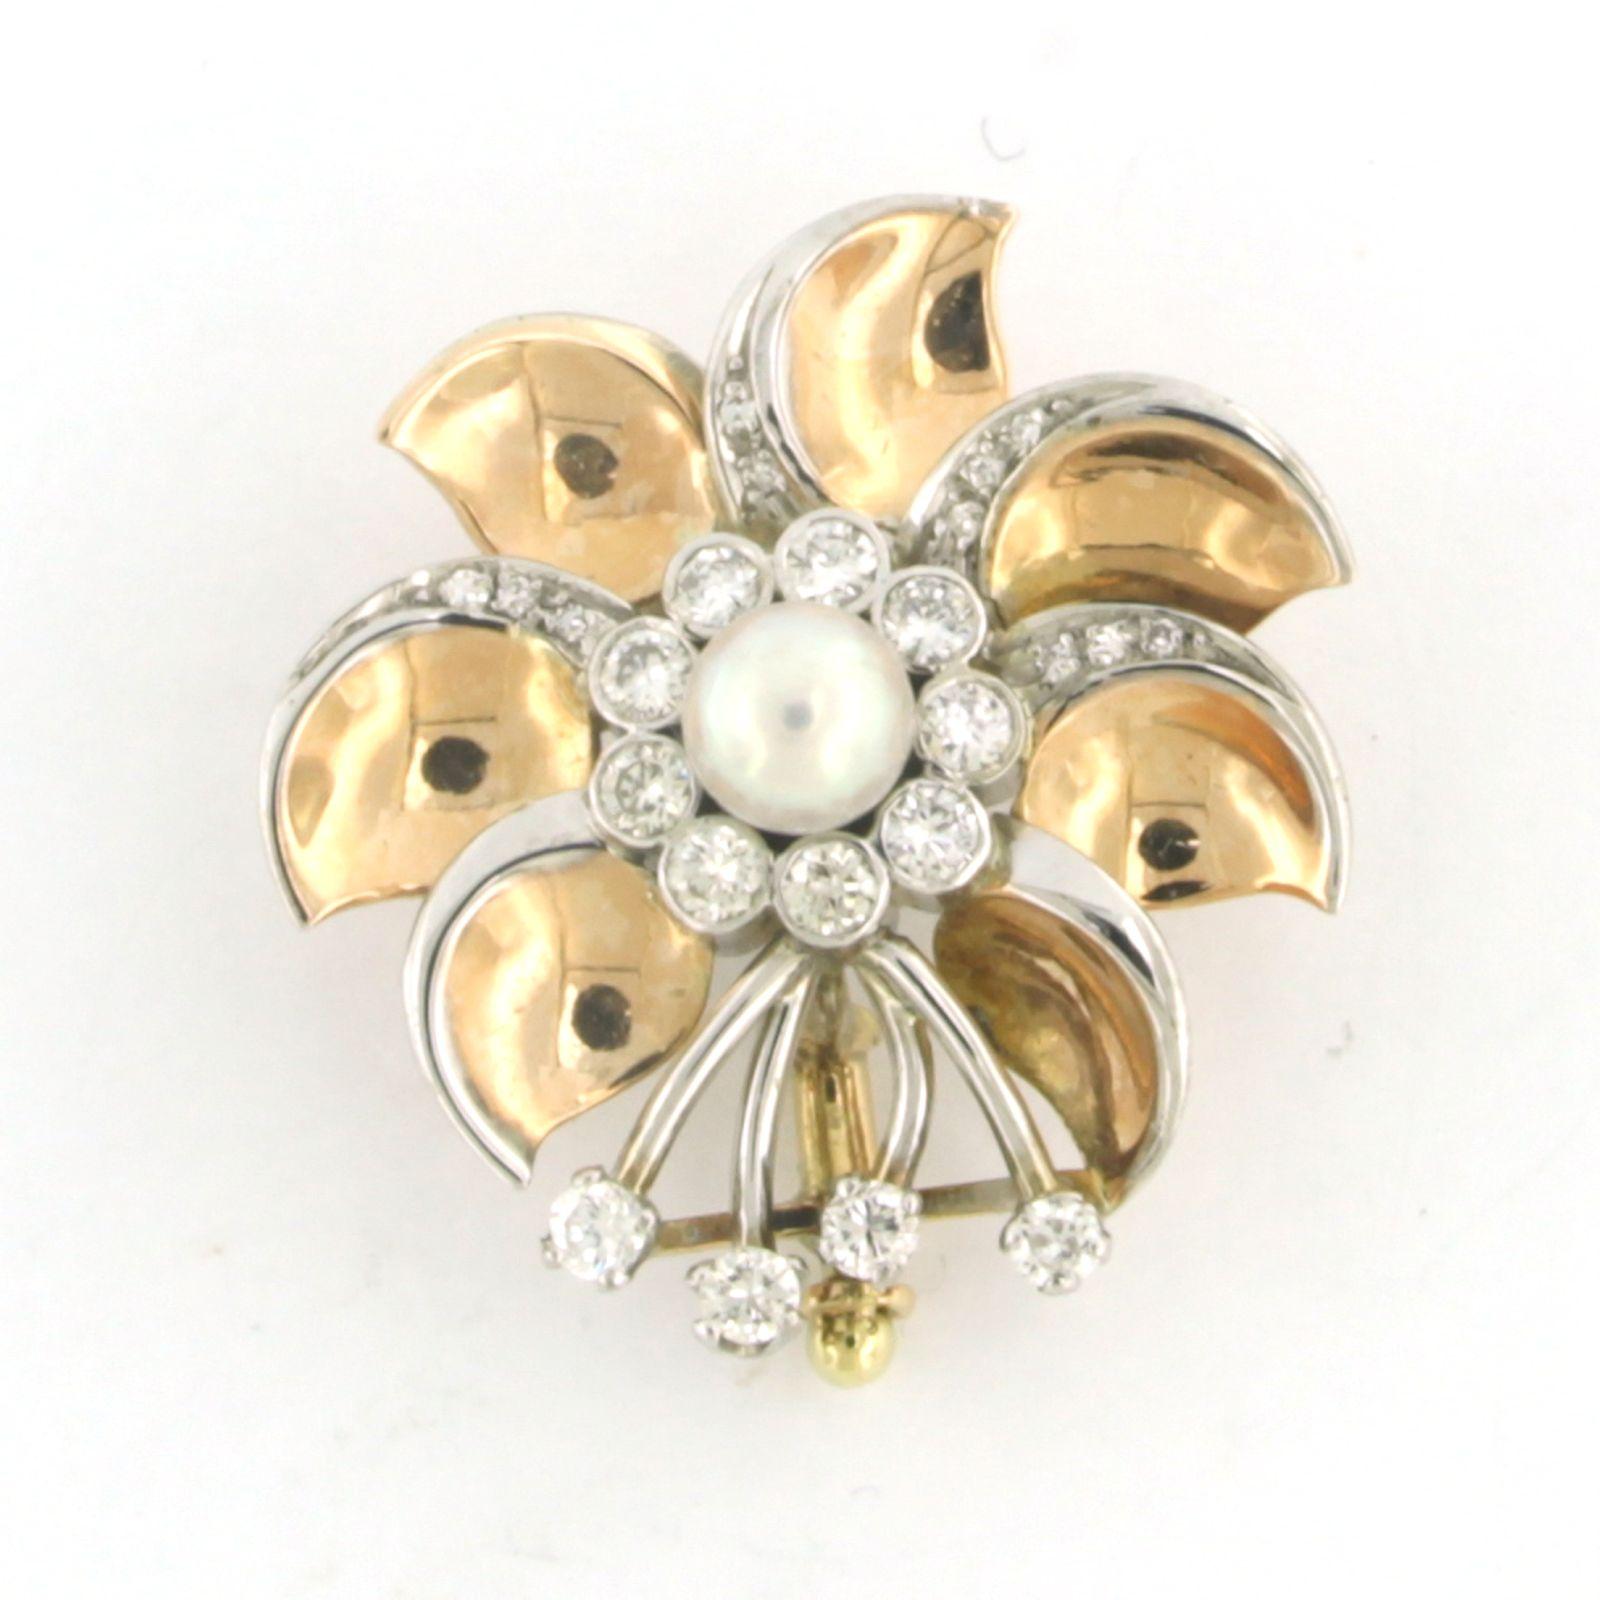 Brosche aus 14 Karat Bicolor-Gold, besetzt mit einer Perle und Diamanten im Brillantschliff. 0,48ct - F/G - VS/SI

detaillierte Beschreibung:

Die Größe der Brosche ist 2,6 cm mal 2,5 cm breit

Gewicht 6,0 Gramm

Beschäftigt mit

- 1 x 5,0 mm